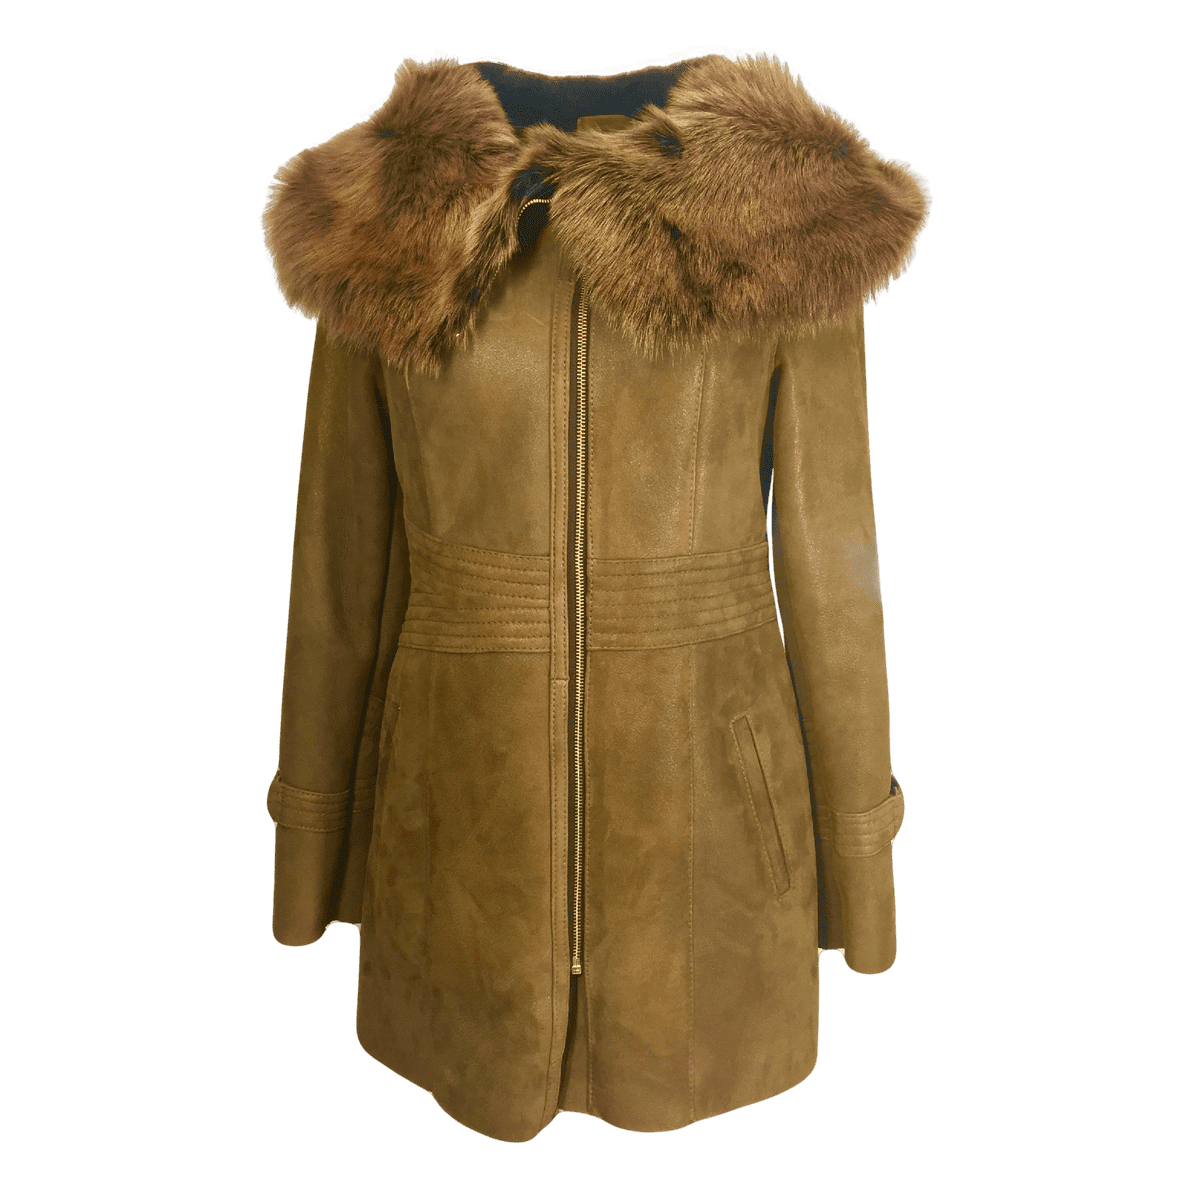 jacket clipart warm coat